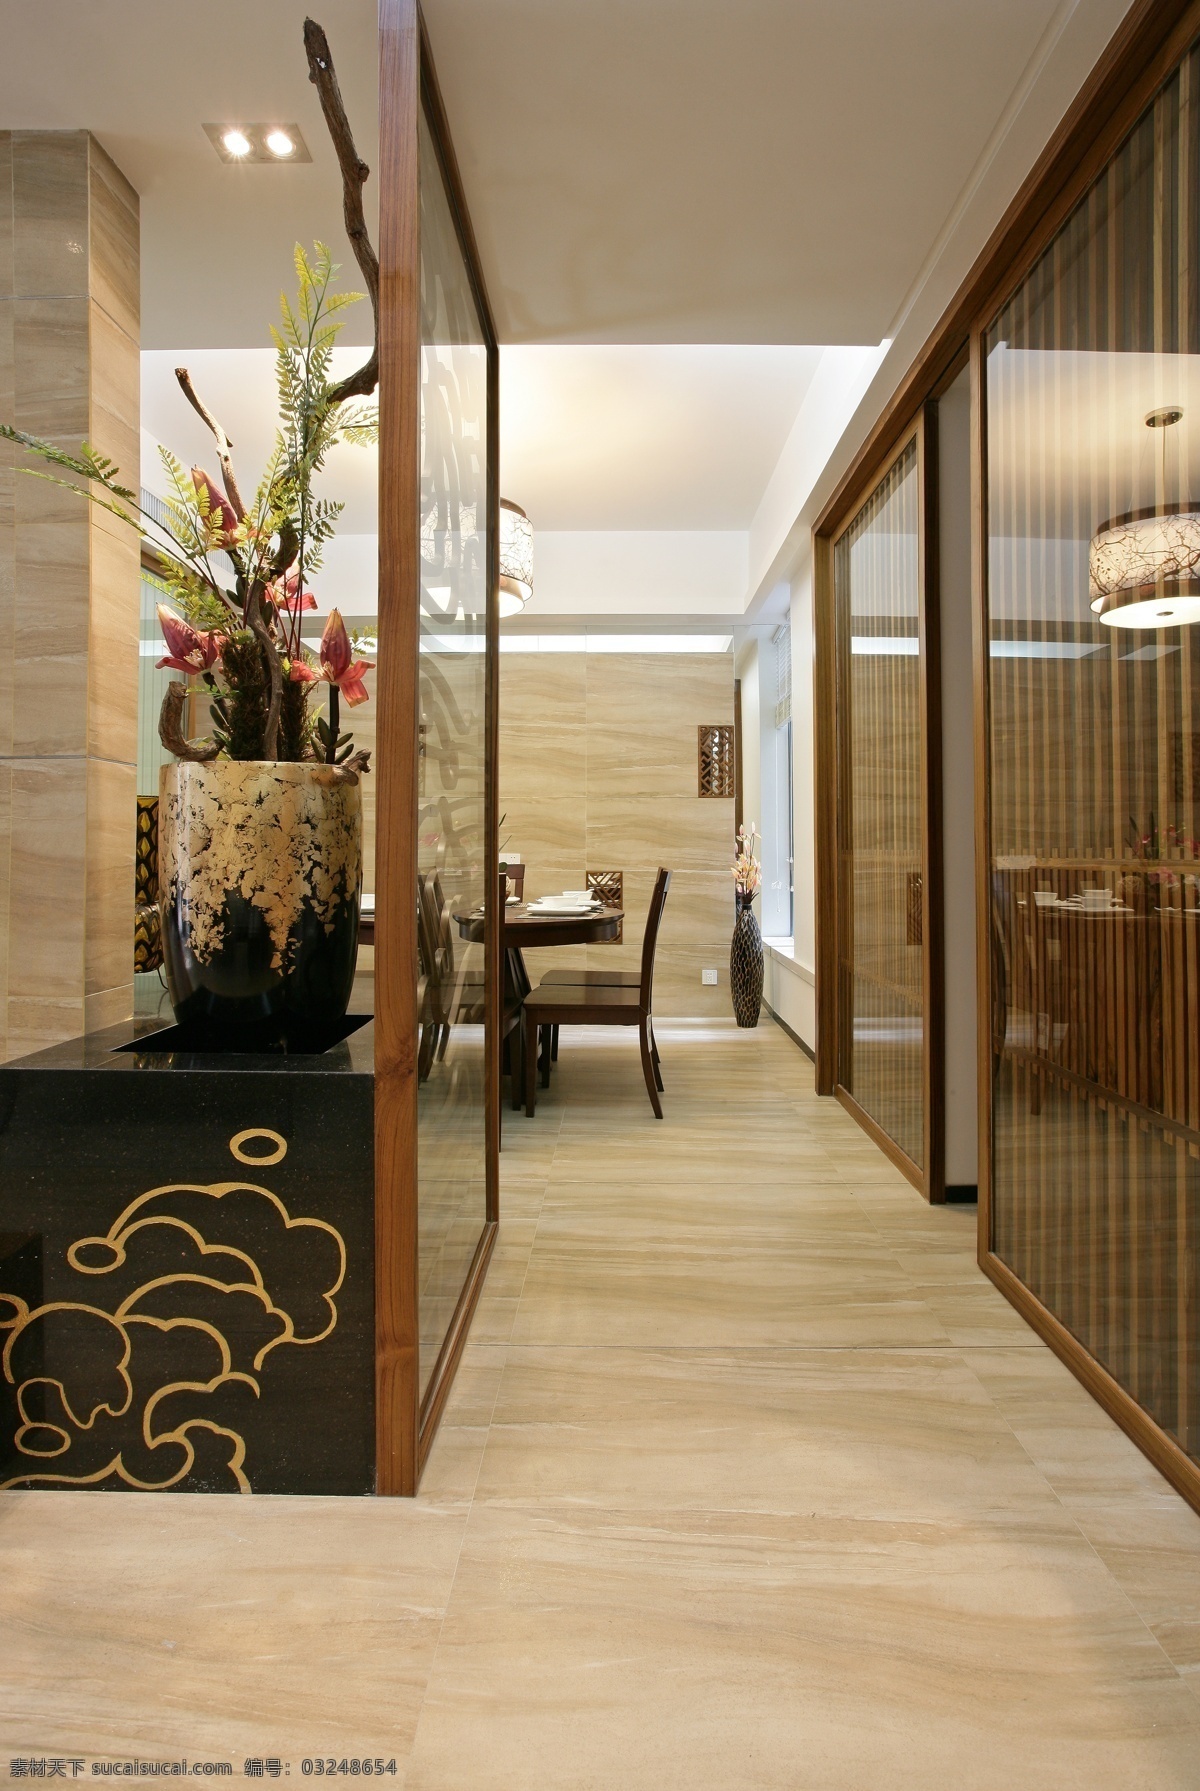 客厅 门廊 3d 效果图 室内 3d渲染图 客厅门廊 高清 渲染 图 家居装饰素材 室内设计